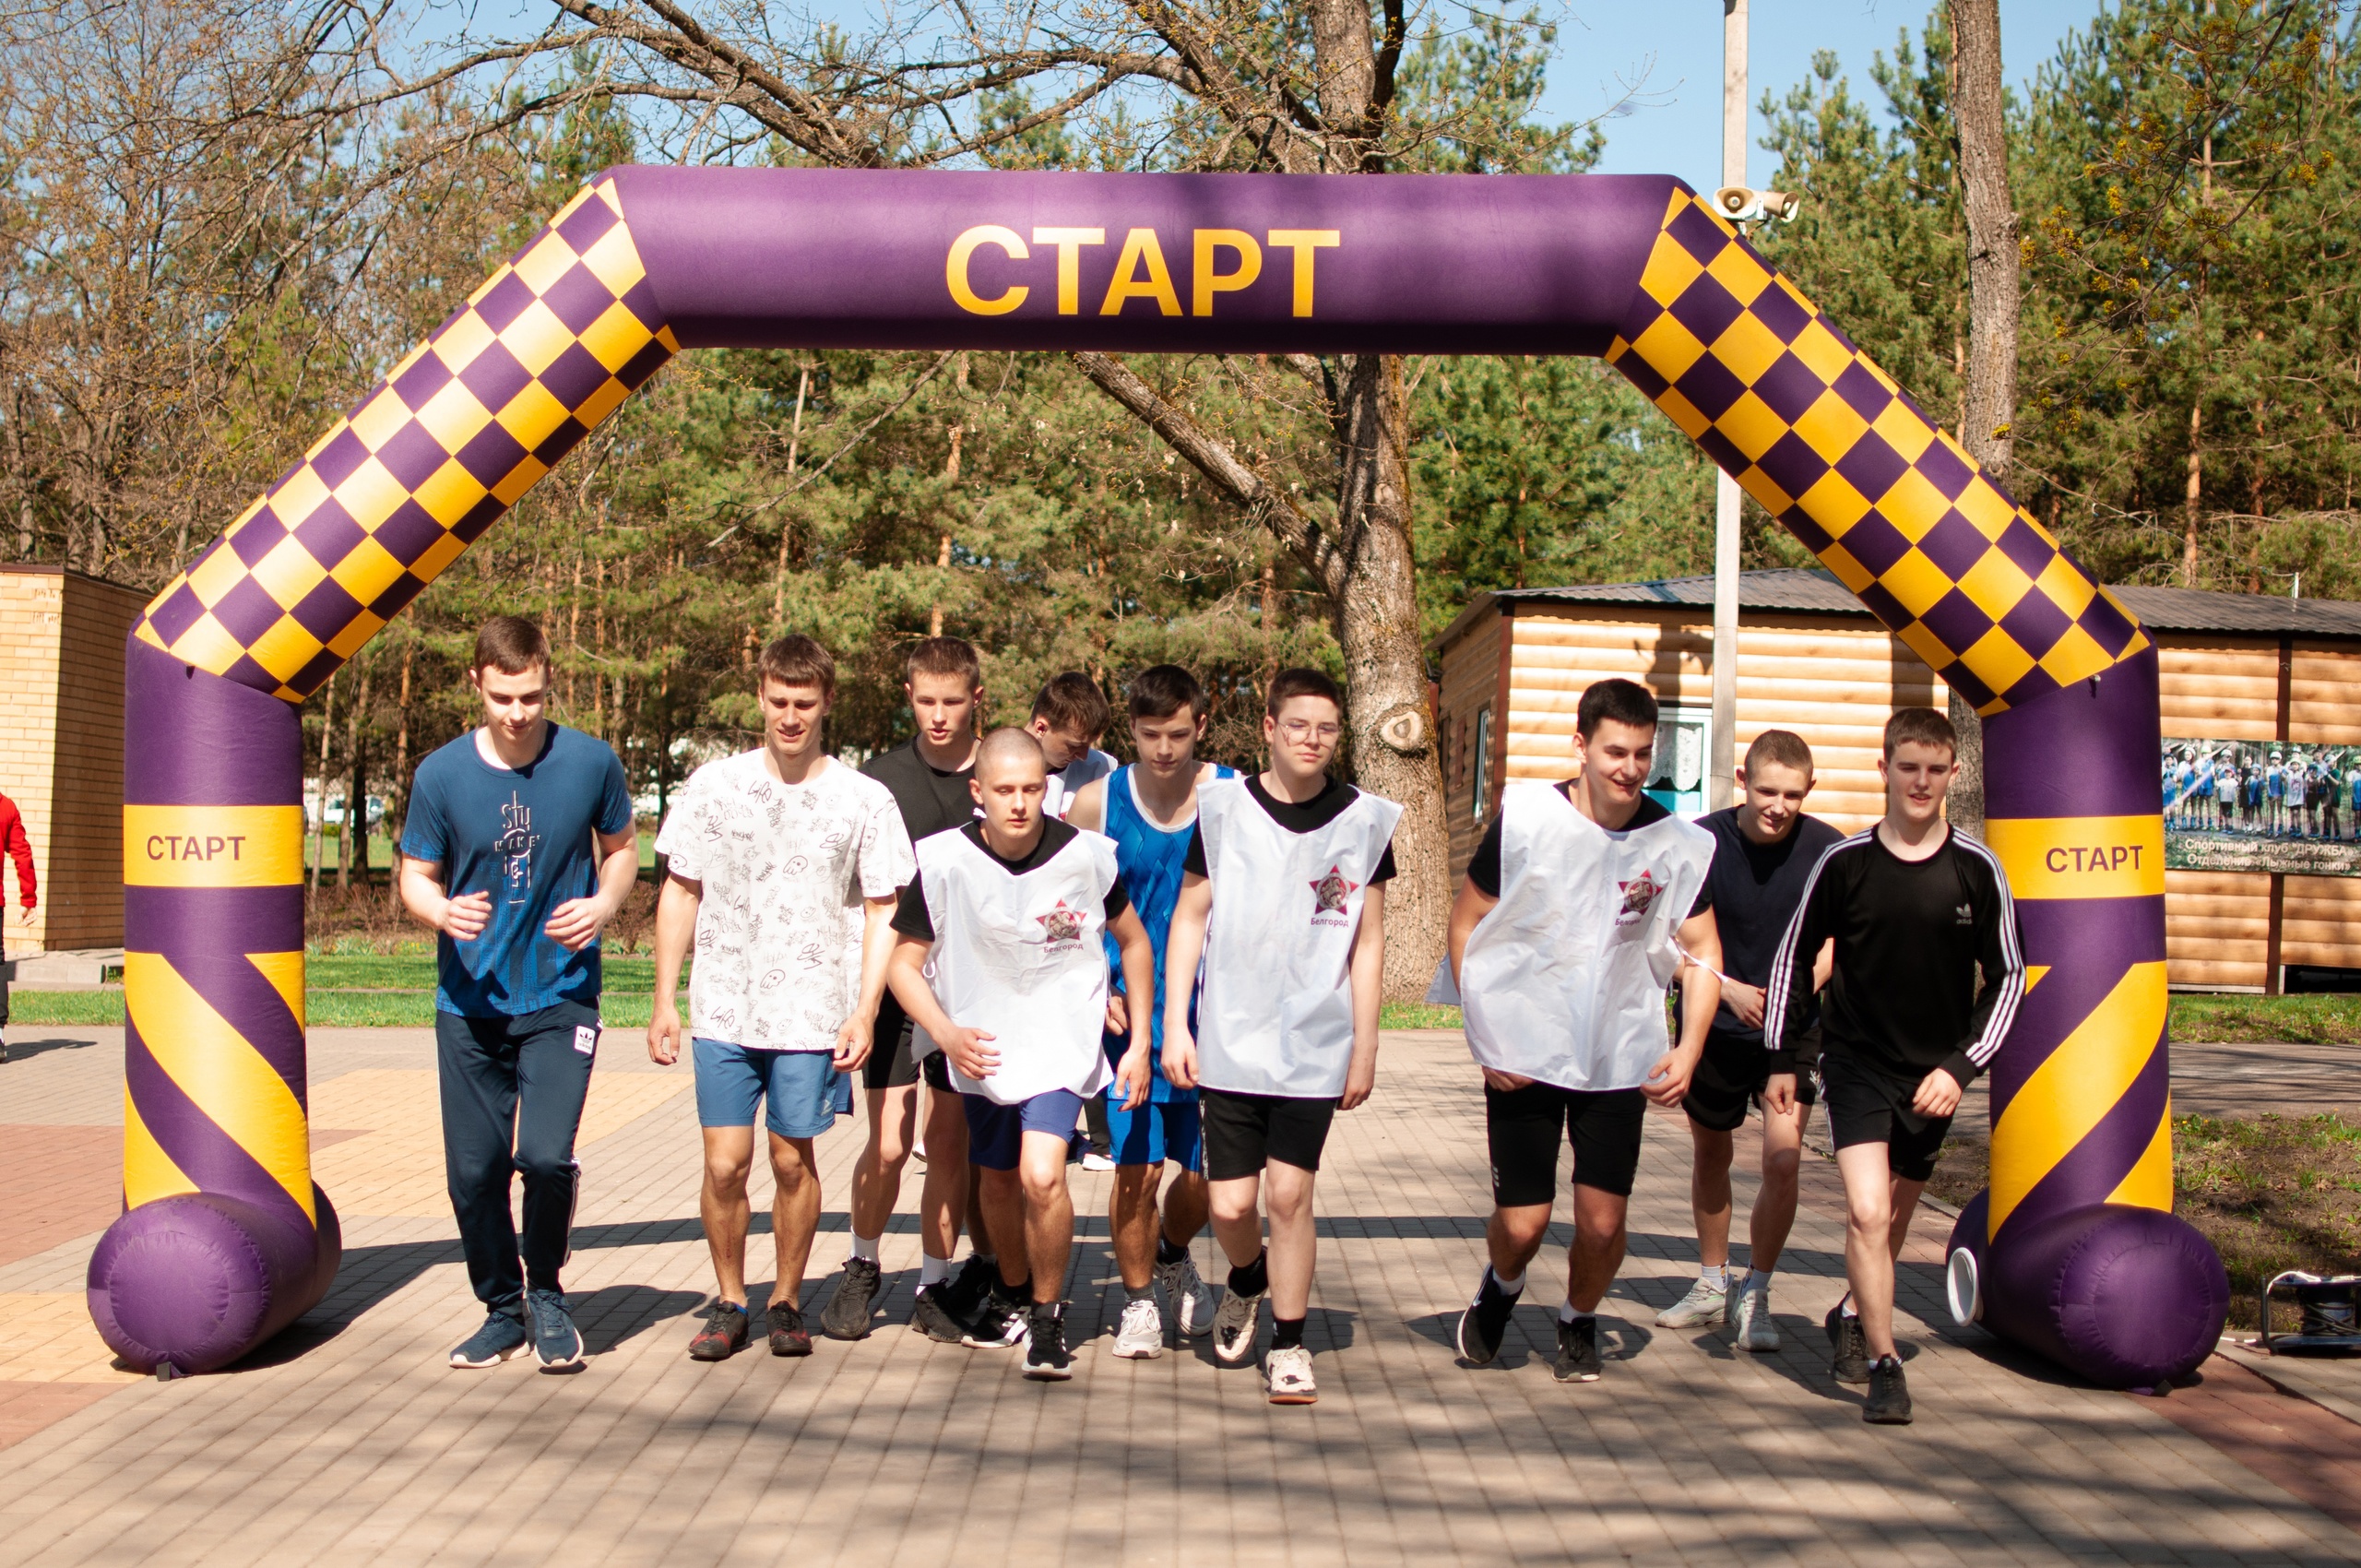 Сегодня в Юсуповском парке в Ракитном прошёл молодёжный антинаркотический легкоатлетический пробег «Мы выбираем жизнь!».